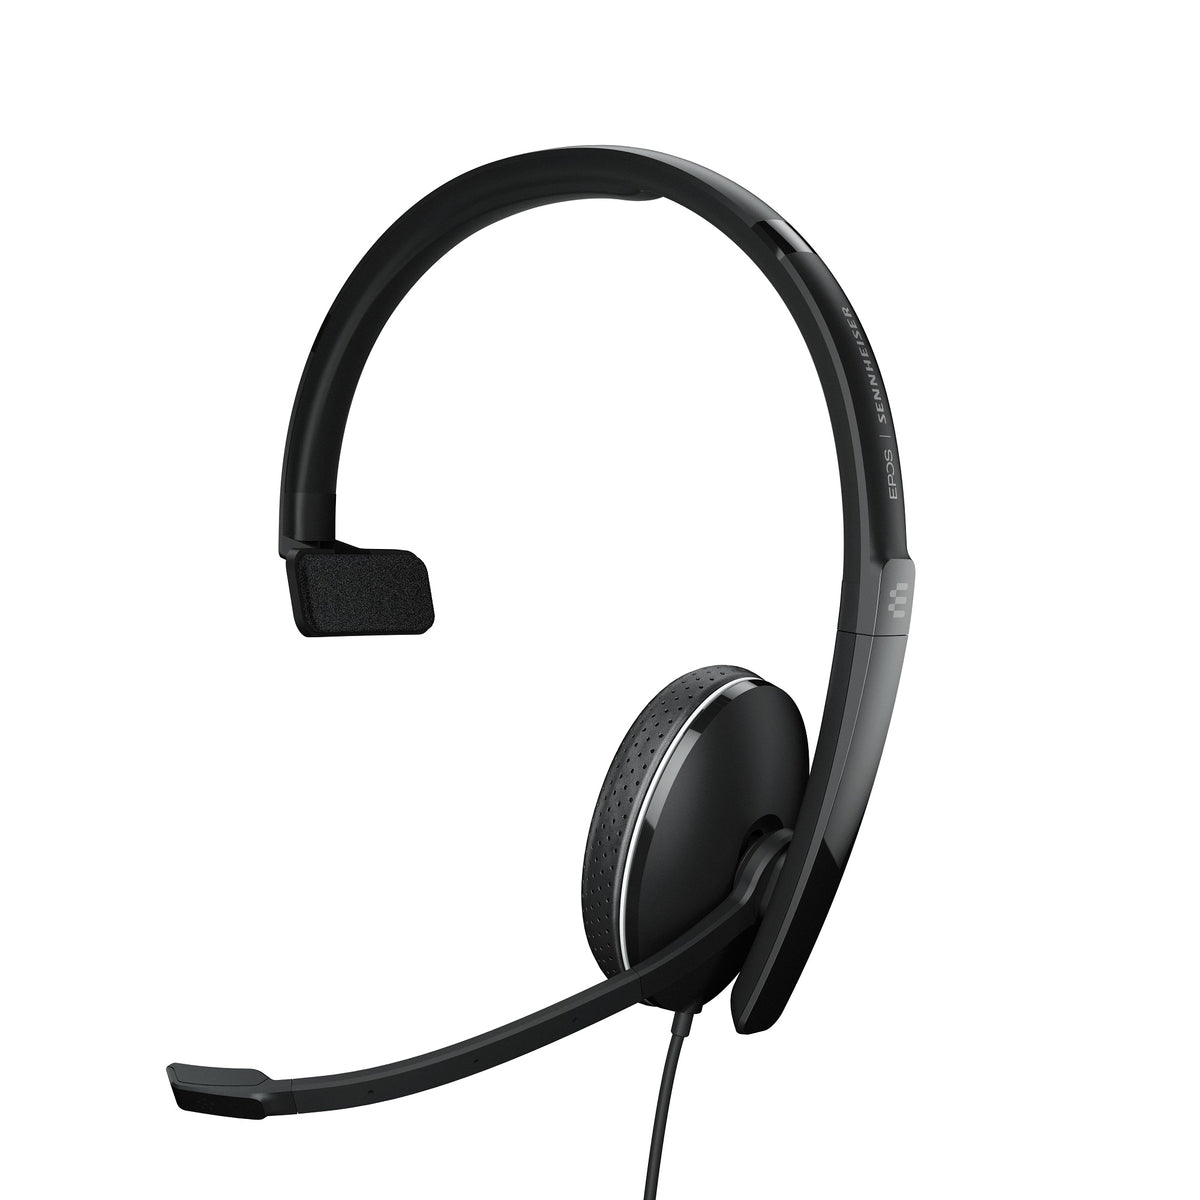 Headset EPOS SENNHEISER ADAPT 135T USB-C II Mono Black Headphones